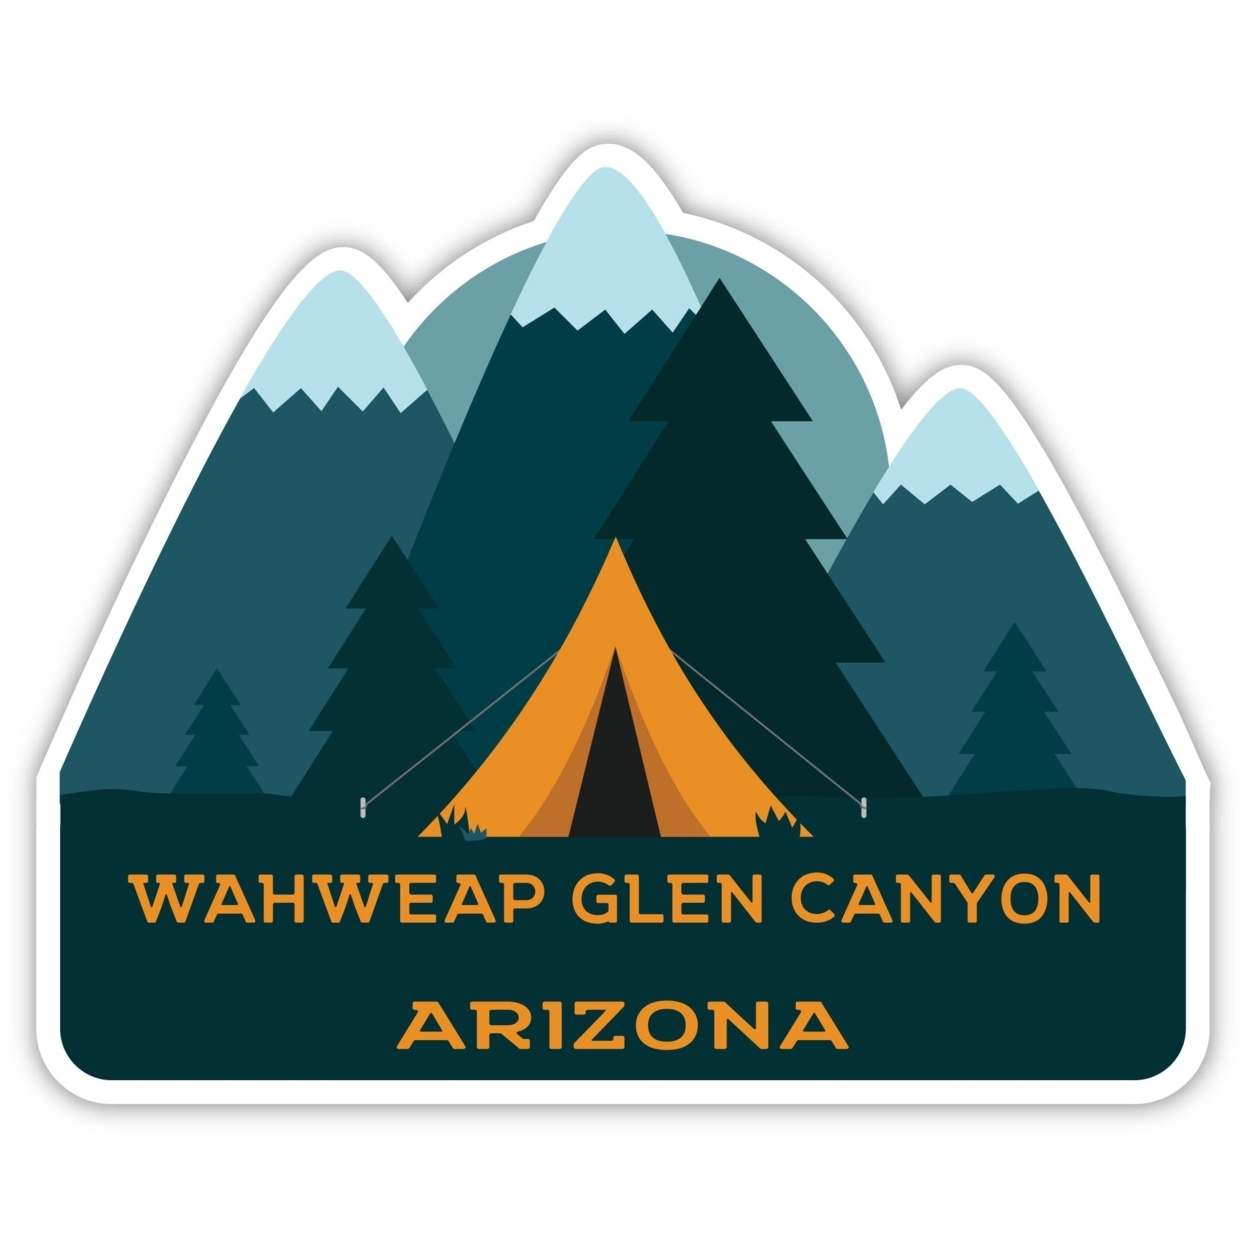 Wahweap Glen Canyon Arizona Souvenir Decorative Stickers (Choose Theme And Size) - Single Unit, 4-Inch, Tent